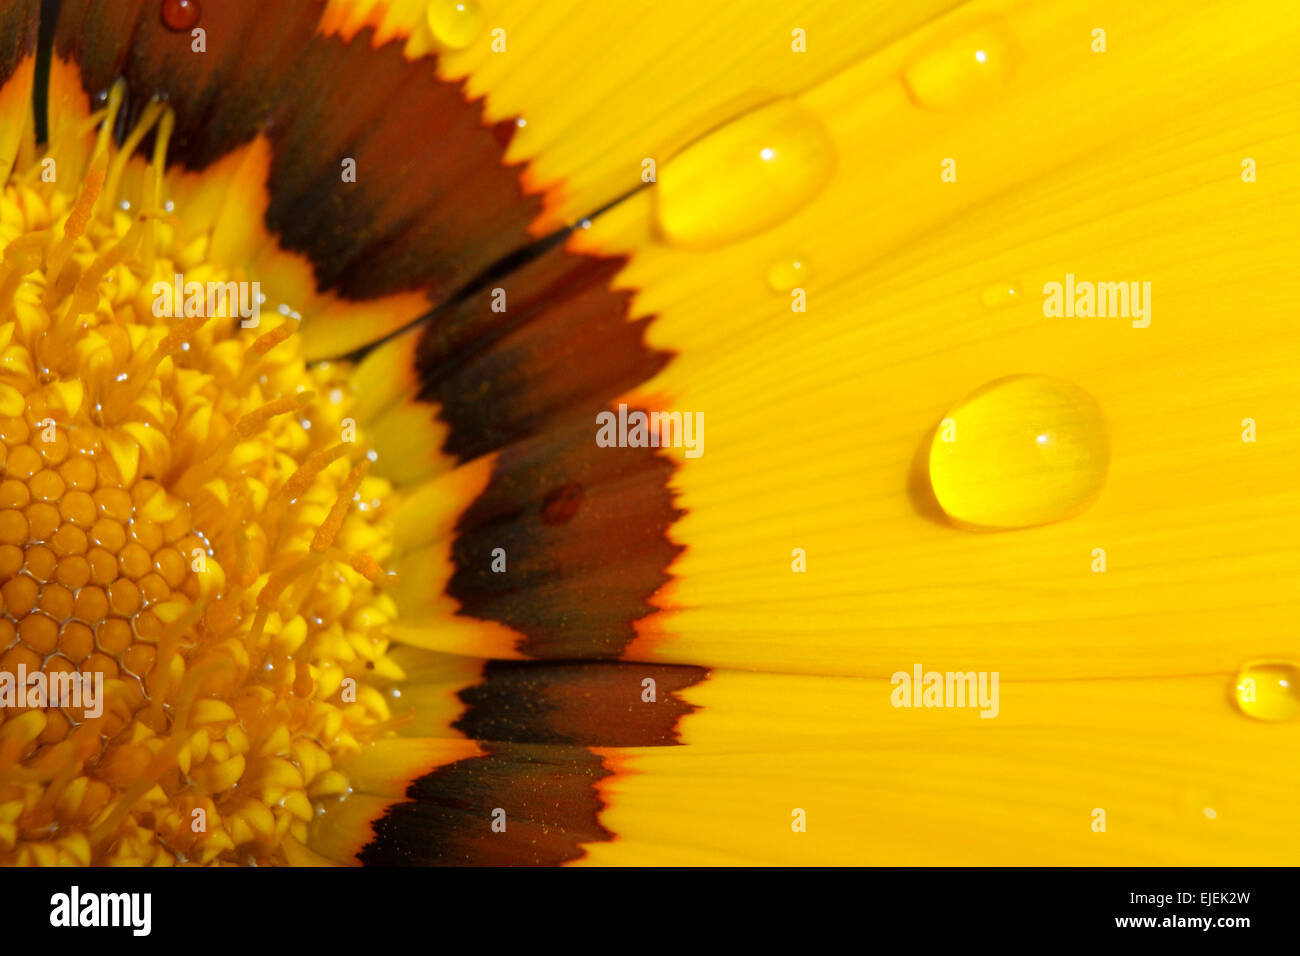 Un close-up di un fiore giallo con qualche goccia d'acqua. Foto Stock